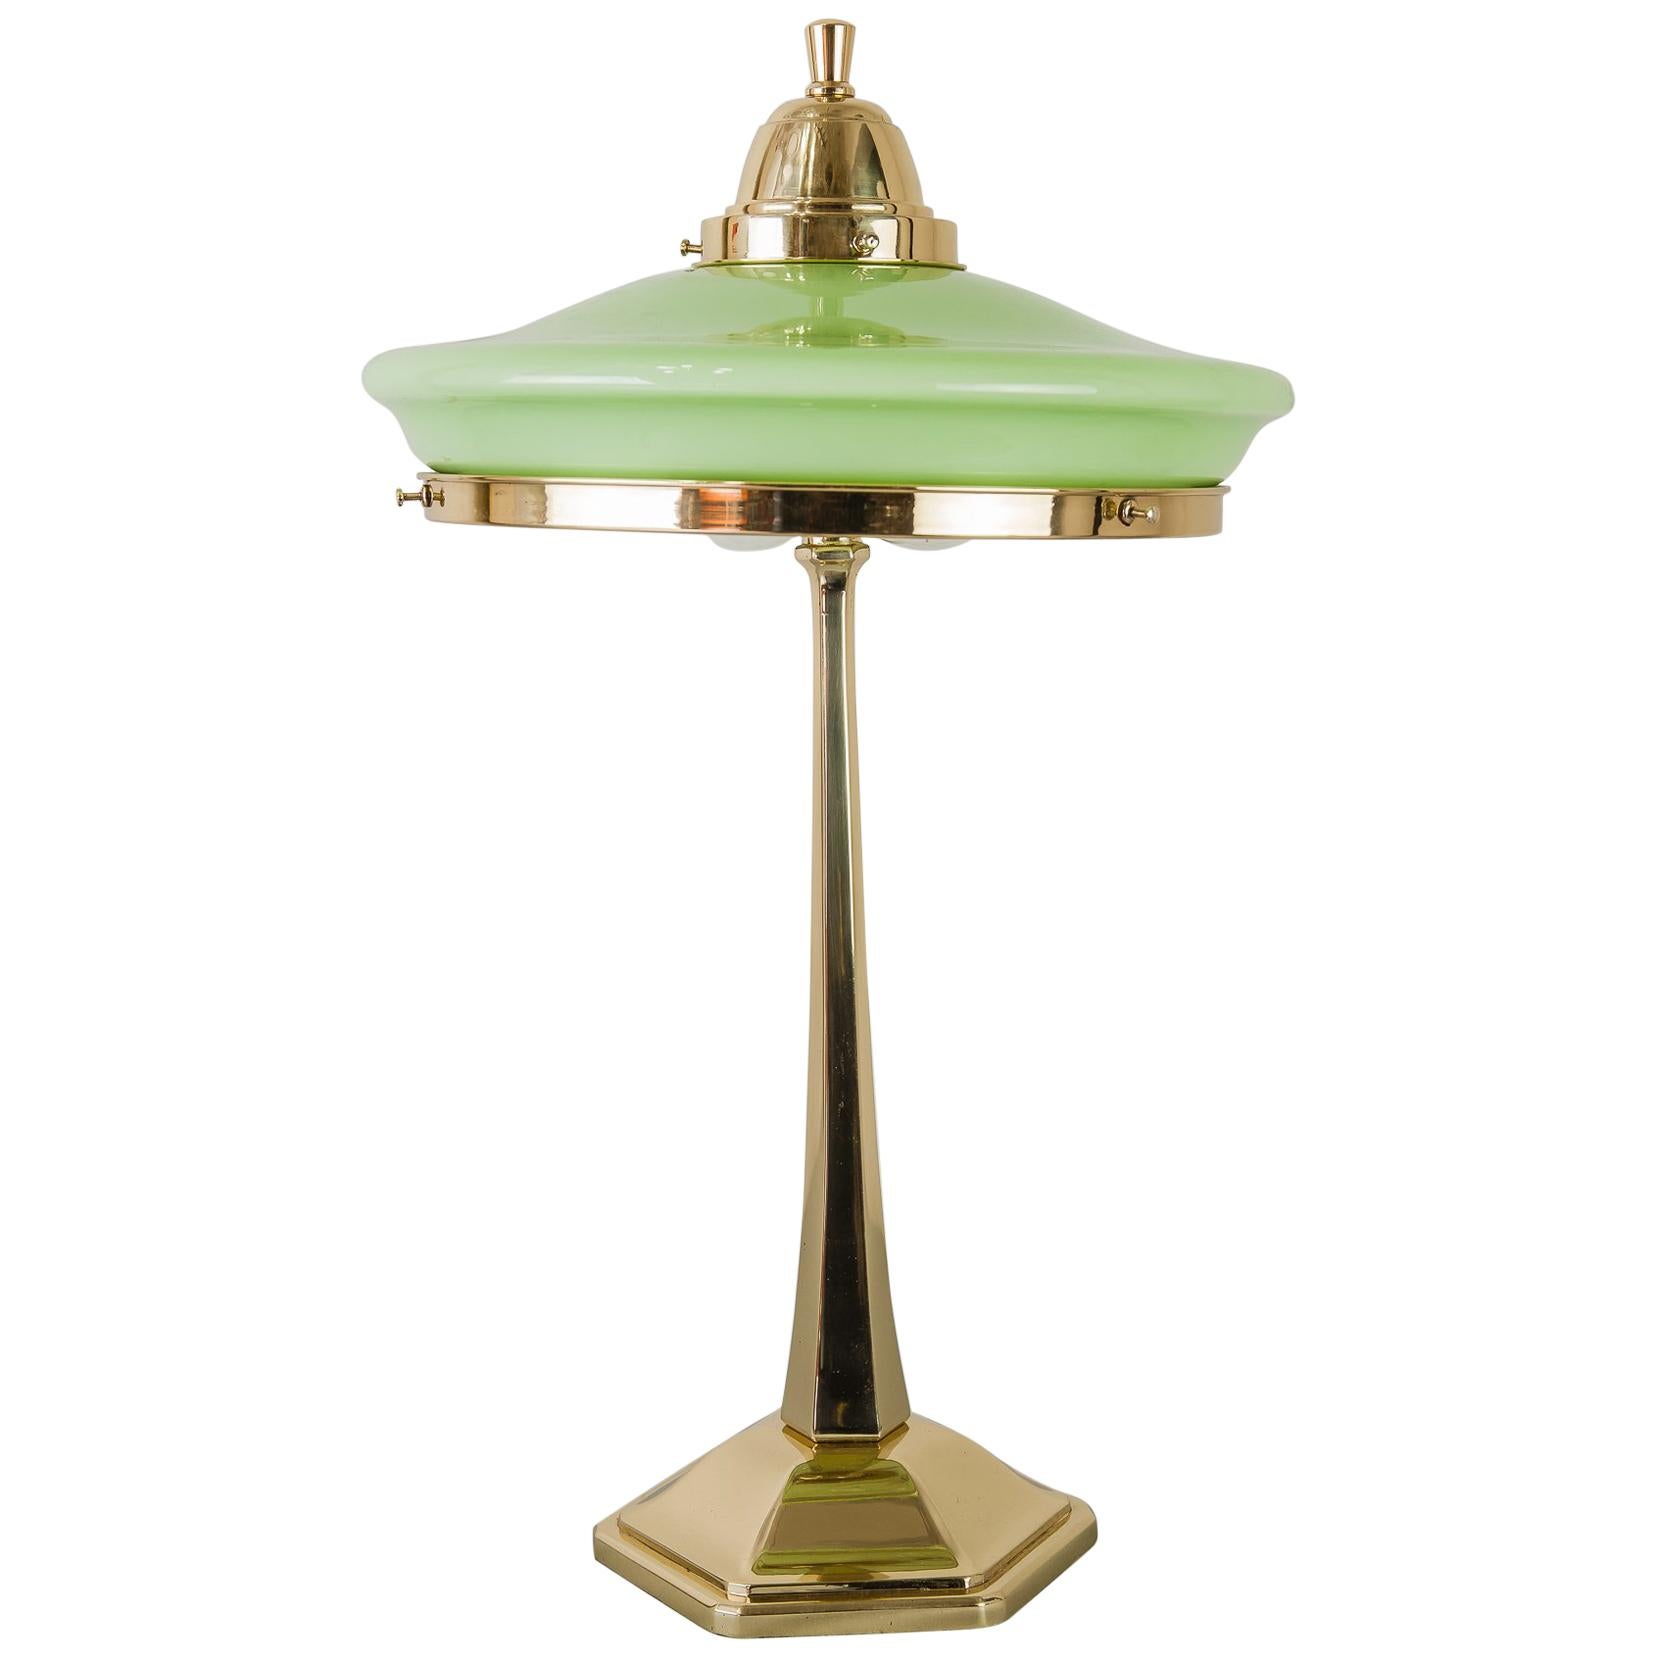 Jugendstil Table Lamp circa 1910s with Original Glass